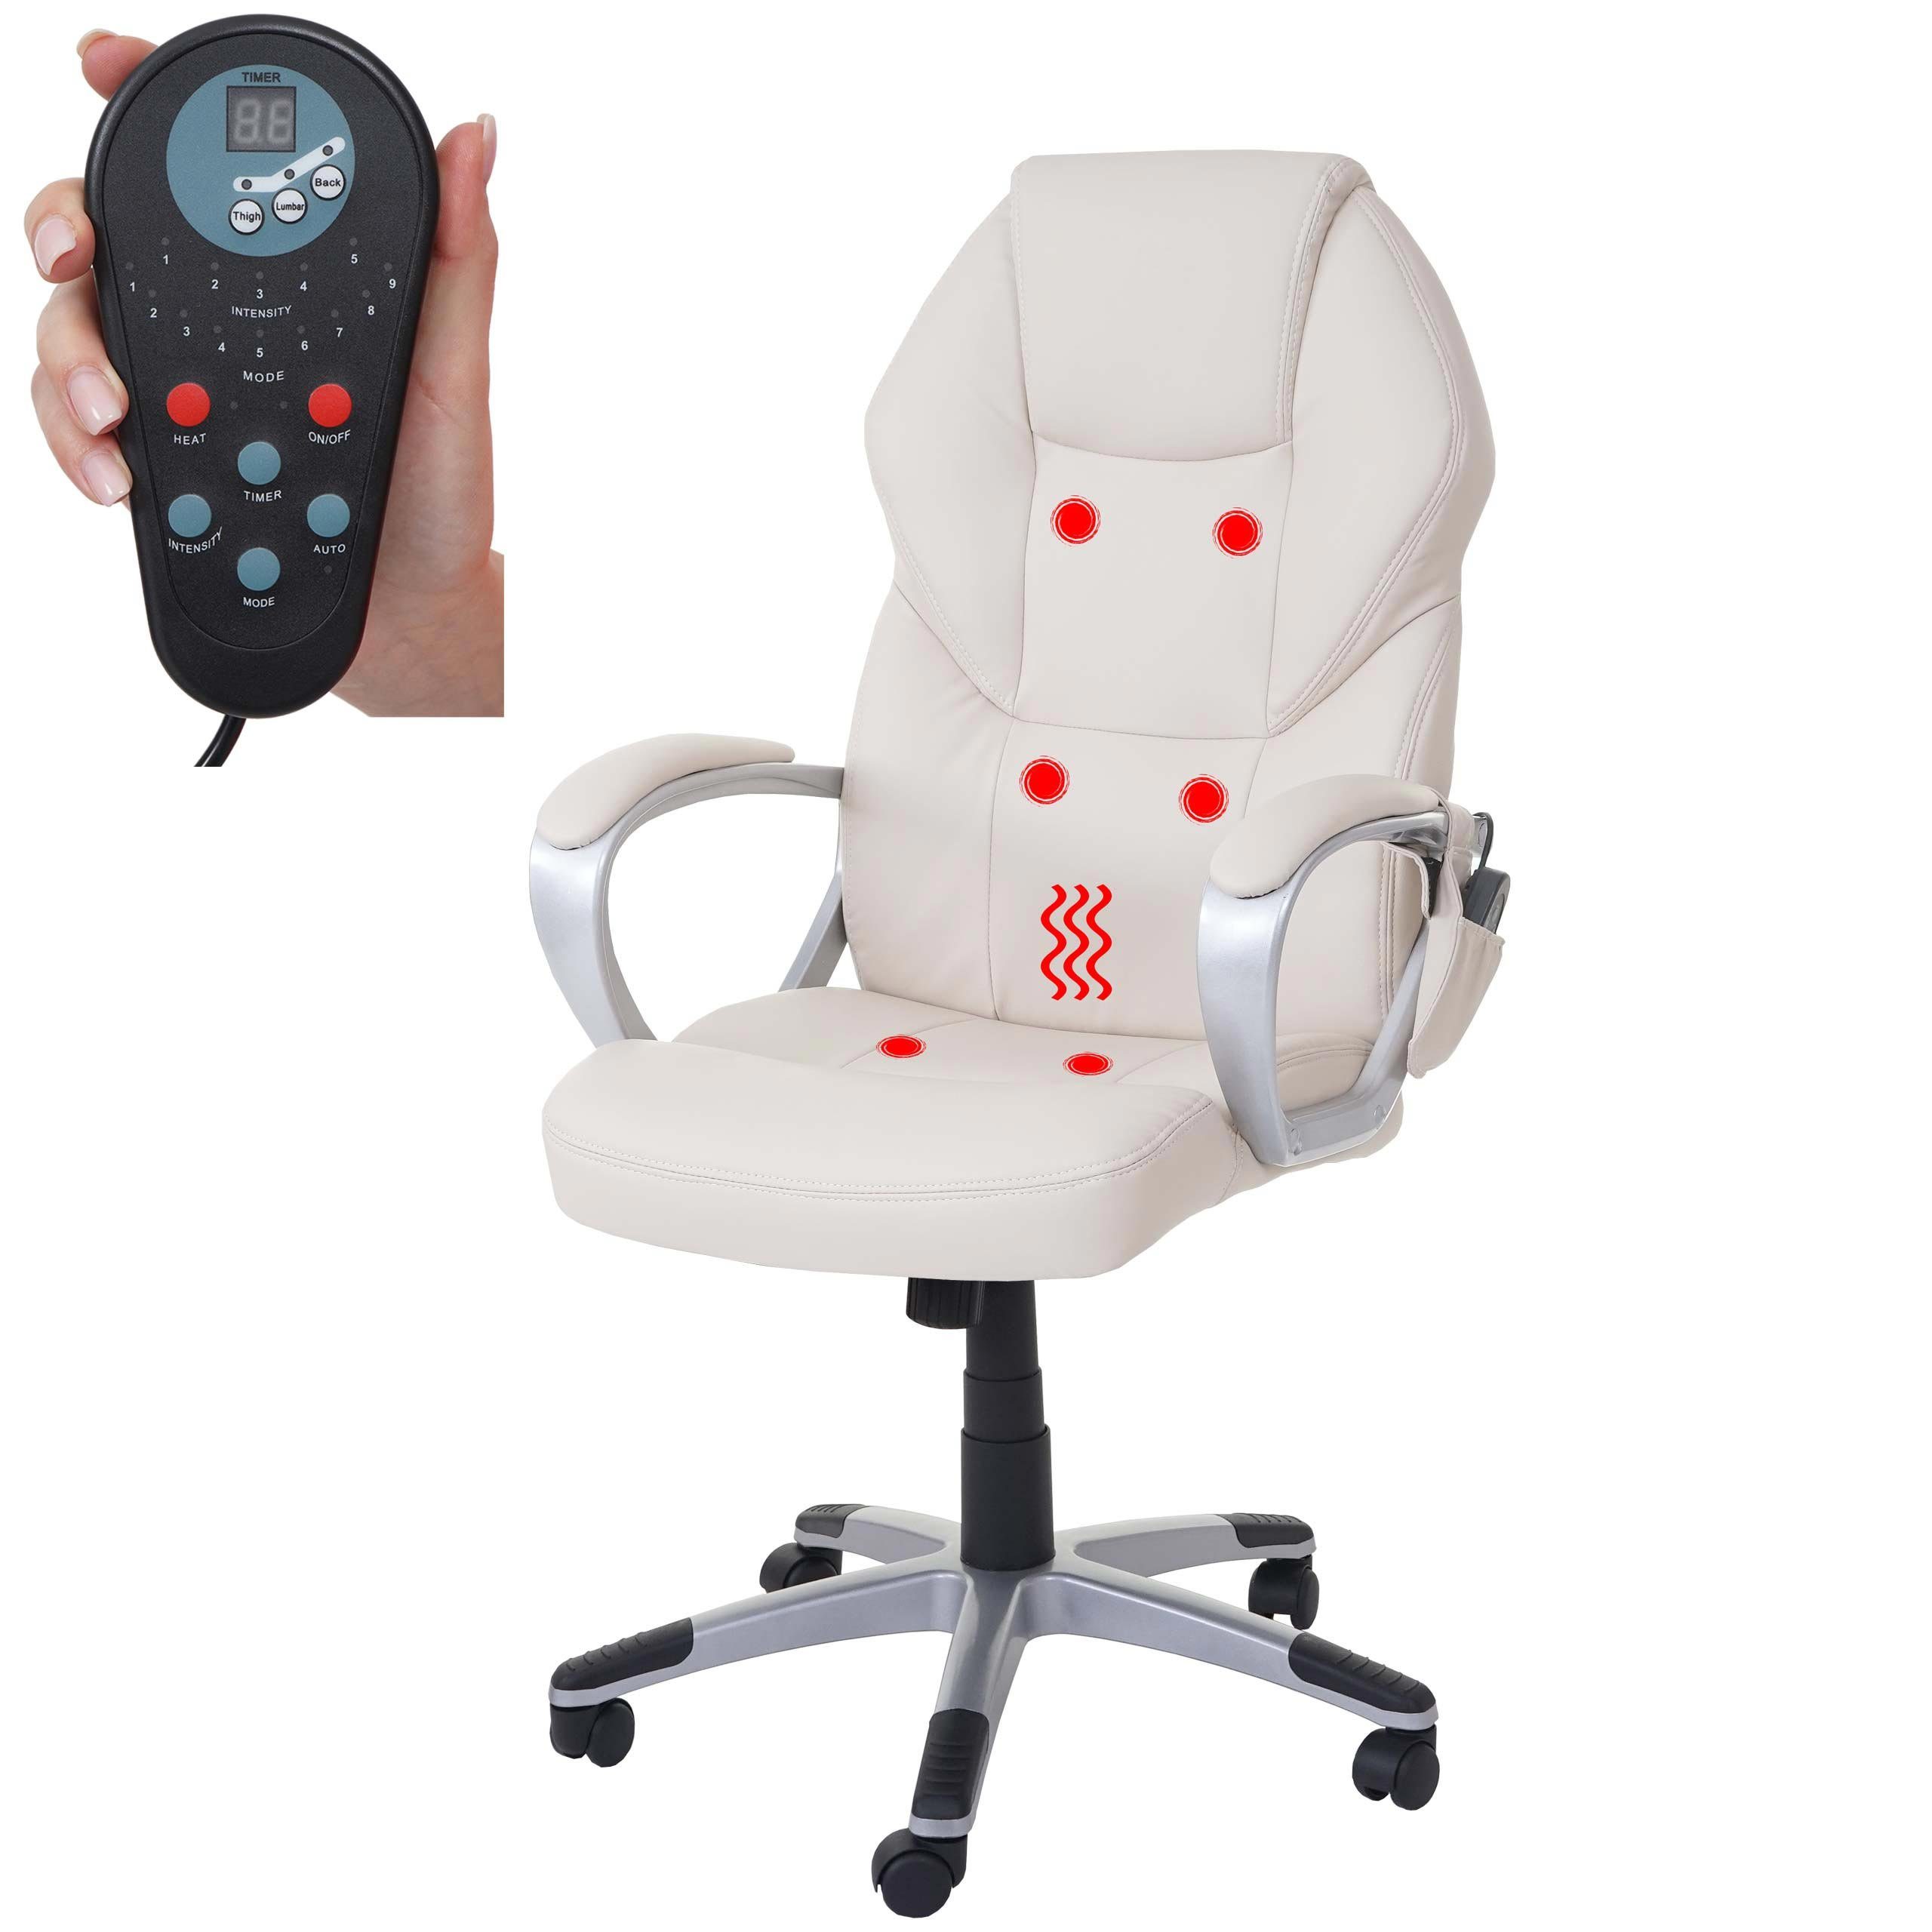 MCW Schreibtischstuhl MCW-A69, 6-Punkt-Massage, Heizfunktion in Rückenlehne, Wippmechanik einstellbar creme